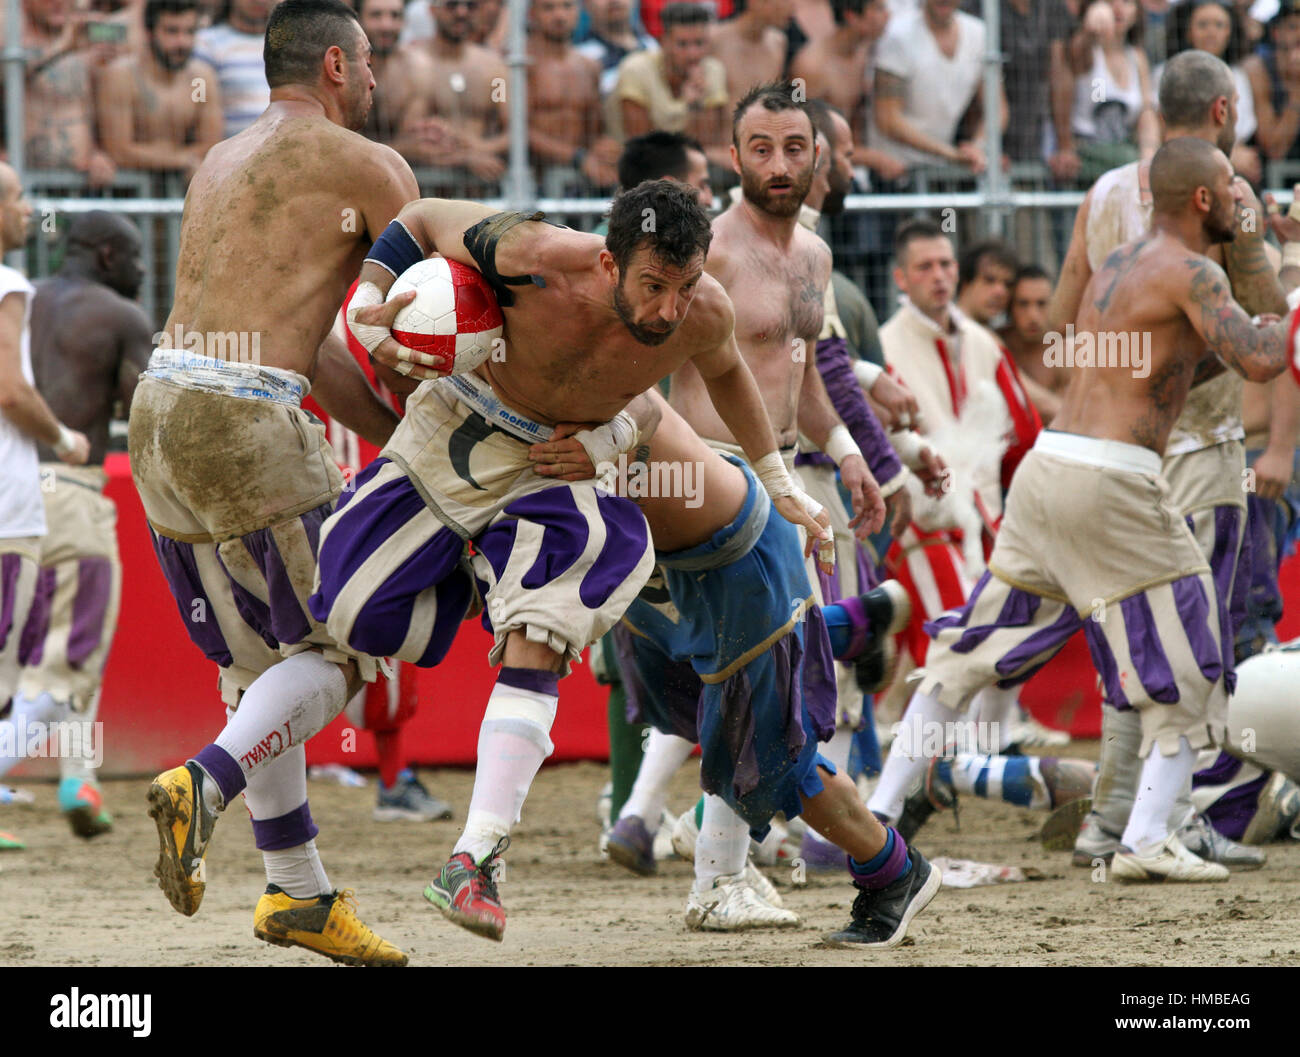 calcio storico fiorentino Stock Photo - Alamy